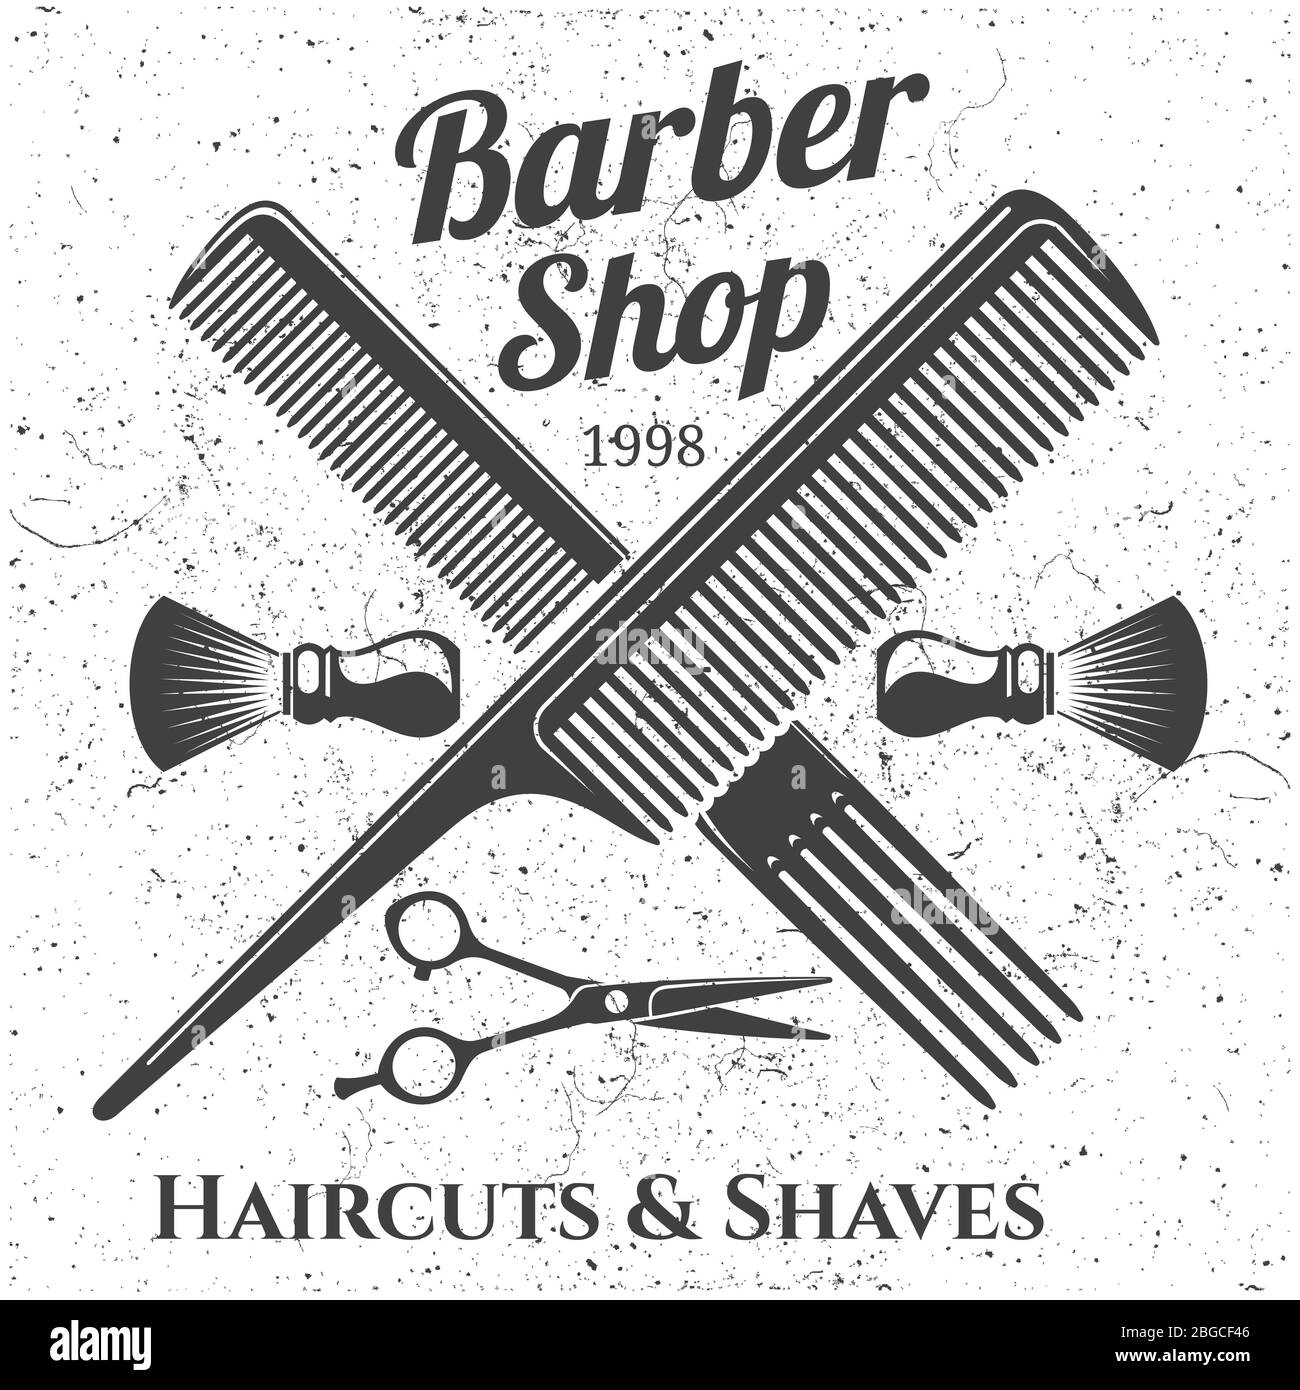 Graues Vintage Barber Shop Emblem Design. Banner mit Label-Abzeichen für Friseursalon. Vektorgrafik Stock Vektor